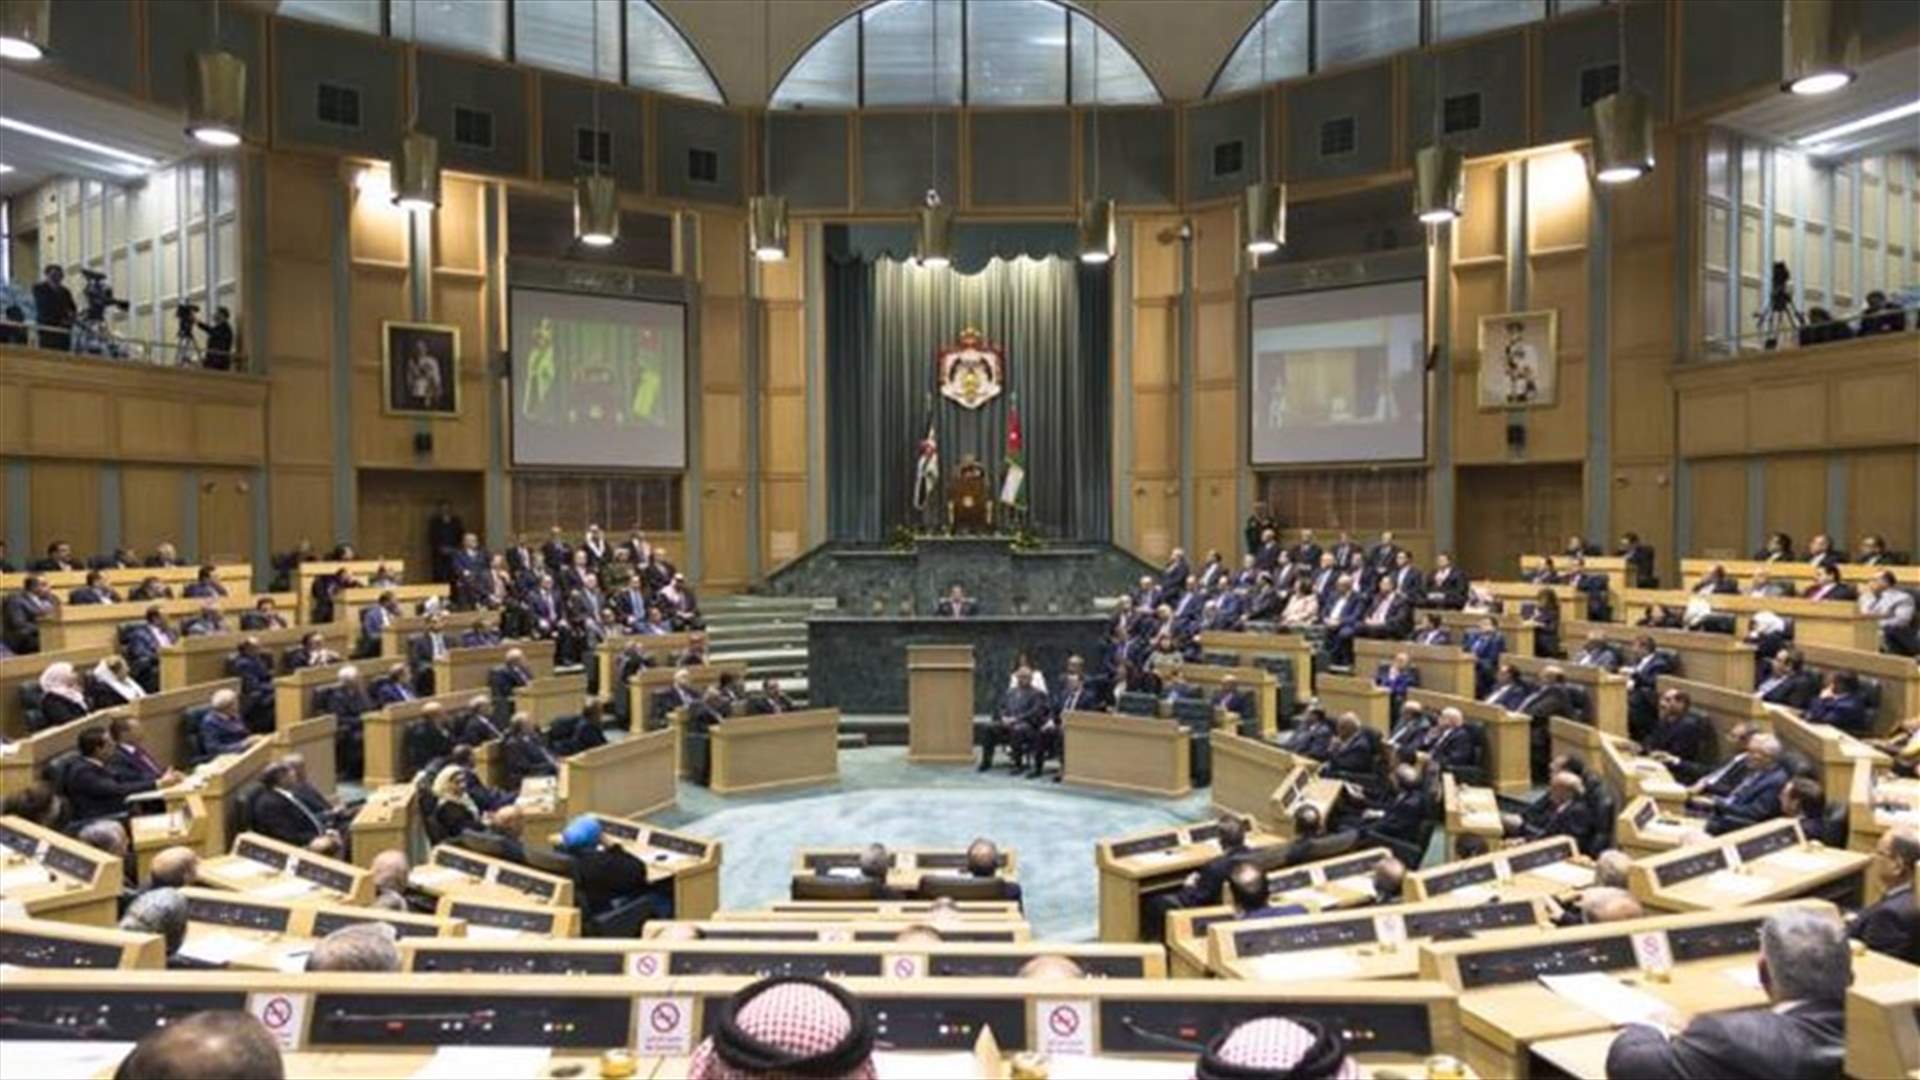 مجلس النواب الأردني يقر قانونا ضريبيا جديدا يدعمه صندوق النقد بعد إجراء تعديلات